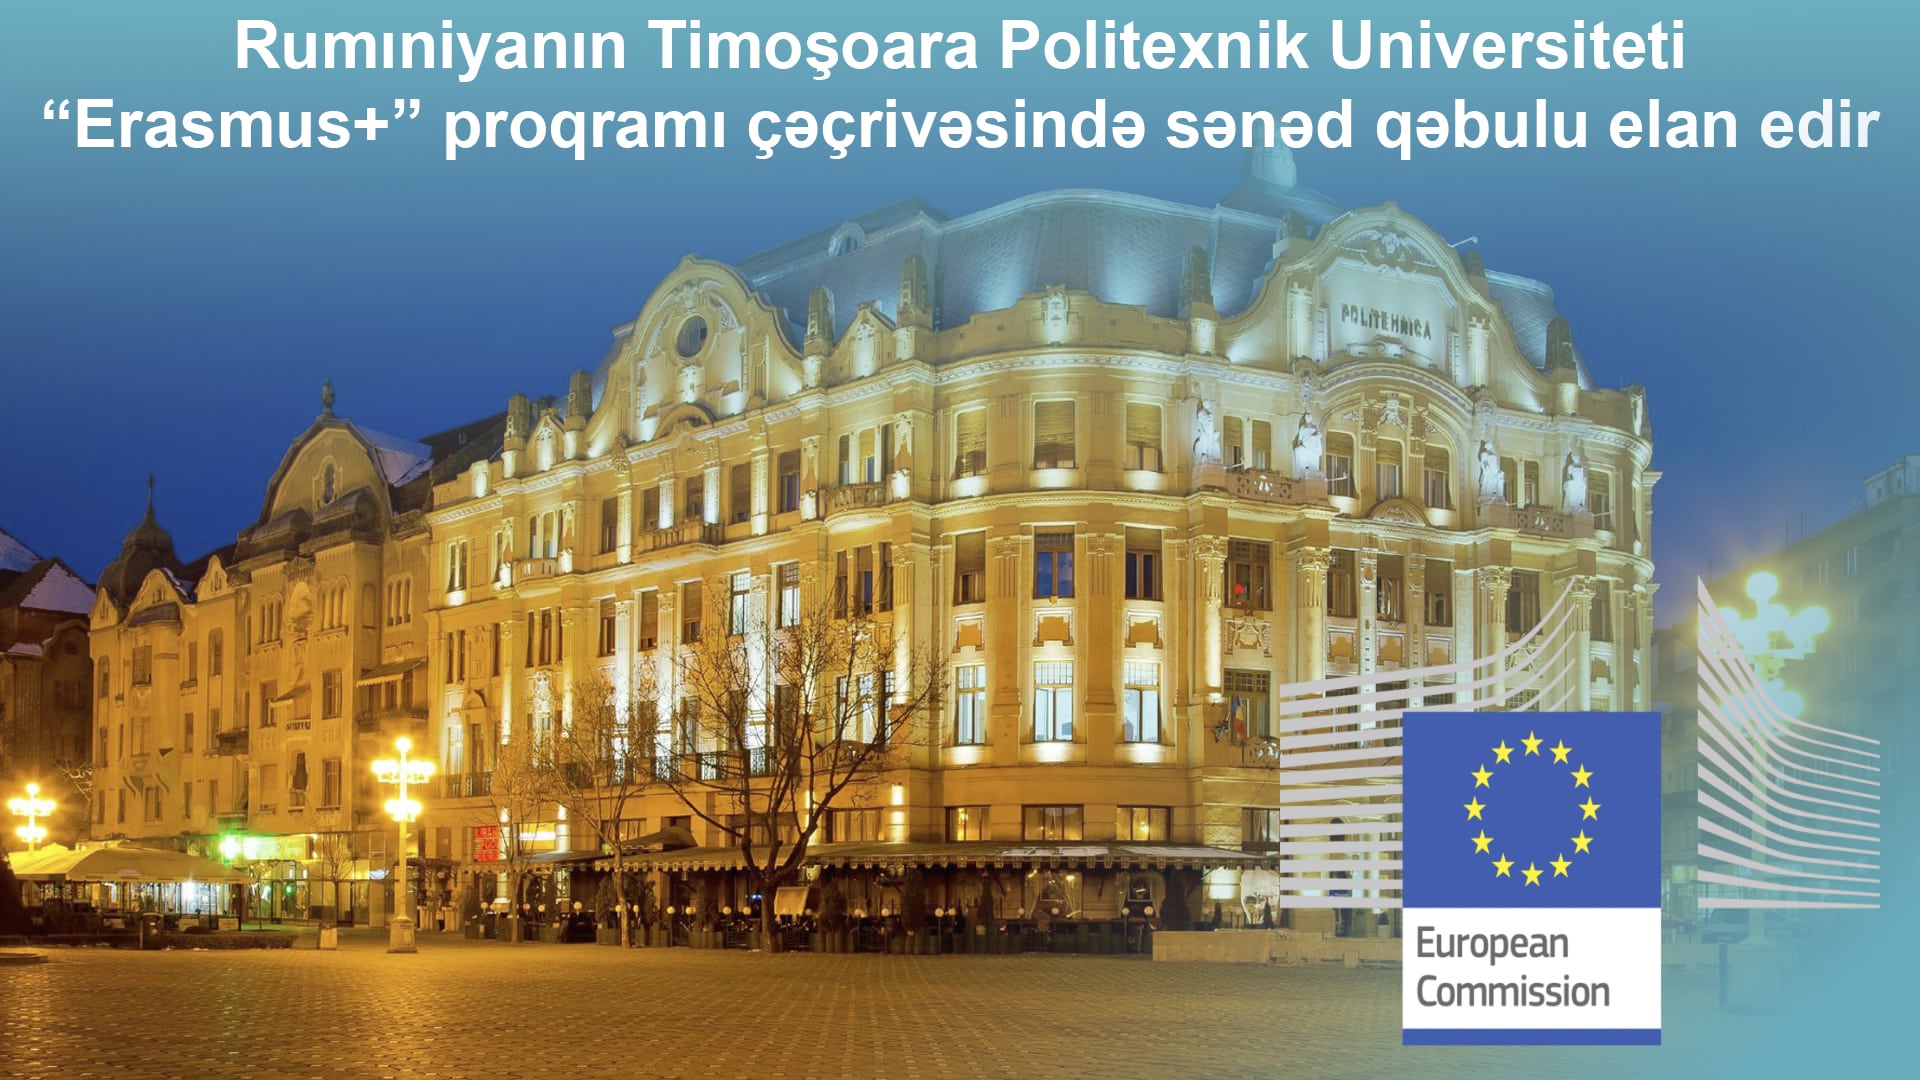 Вы сейчас просматриваете Rumıniyanın Timoşoara Politexnik Universiteti “Erasmus+” proqramı çəçrivəsində sənəd qəbulu elan edir